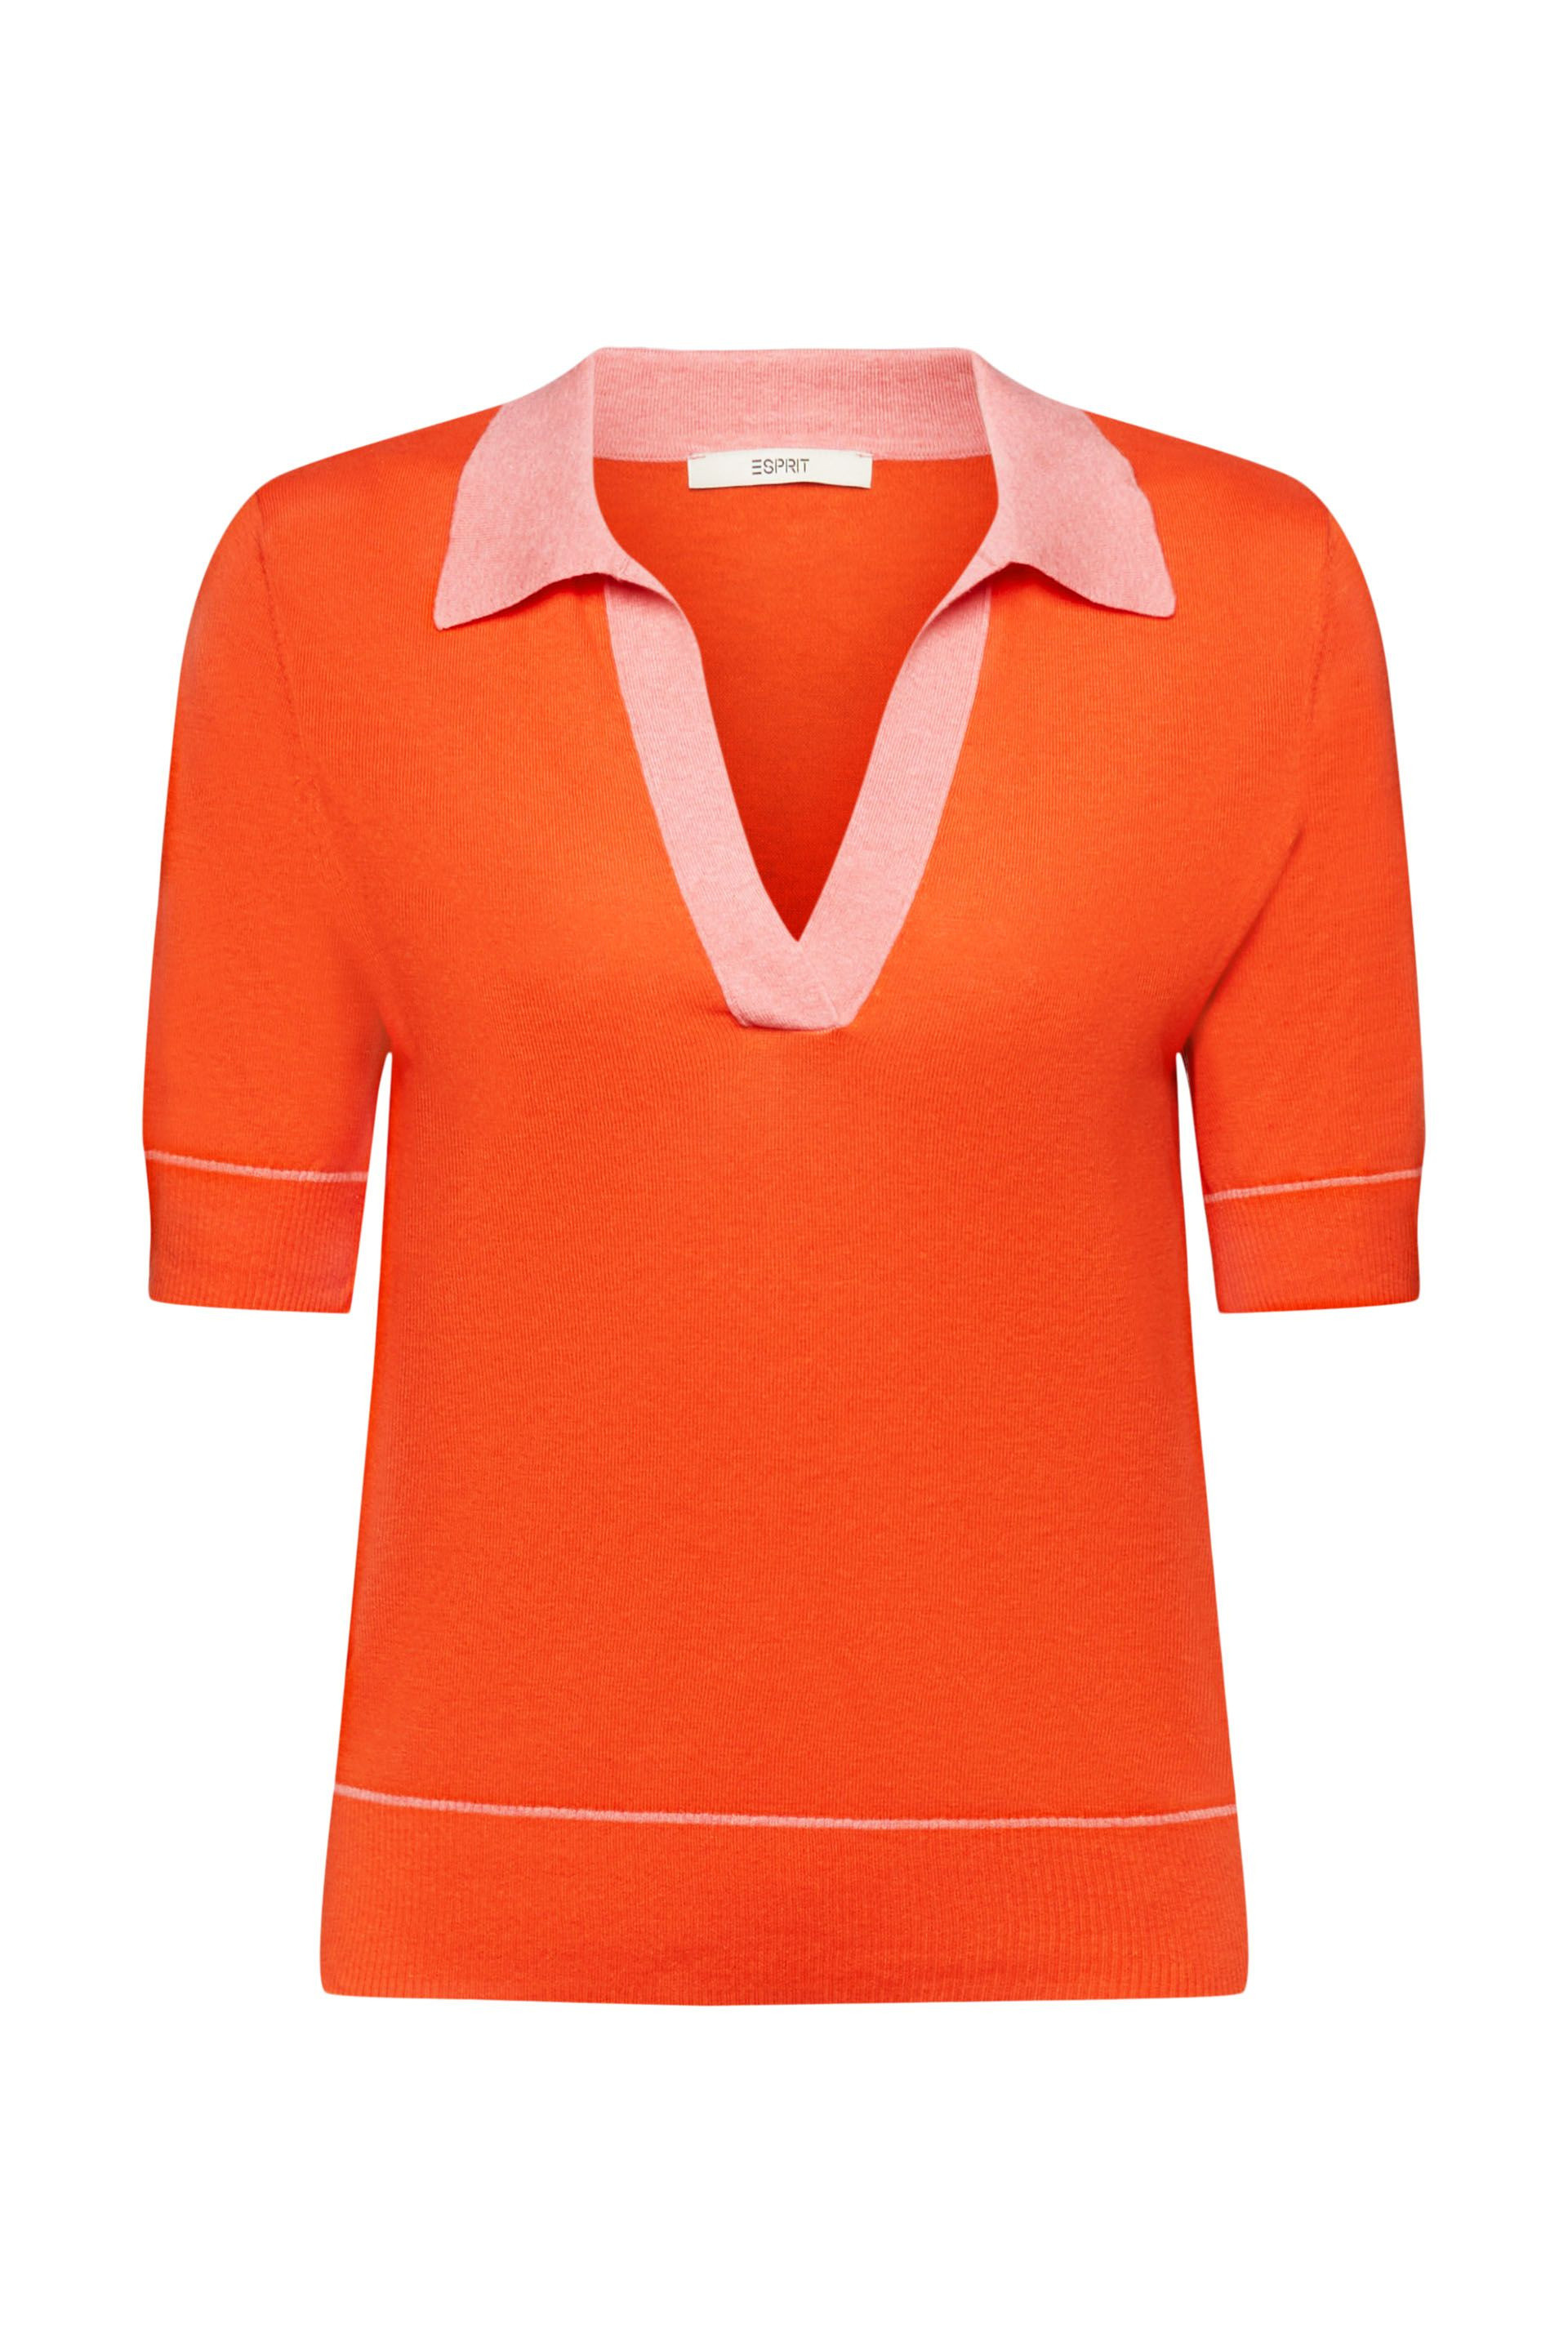 Esprit - Pullover con scollo a V, Arancione, large image number 0